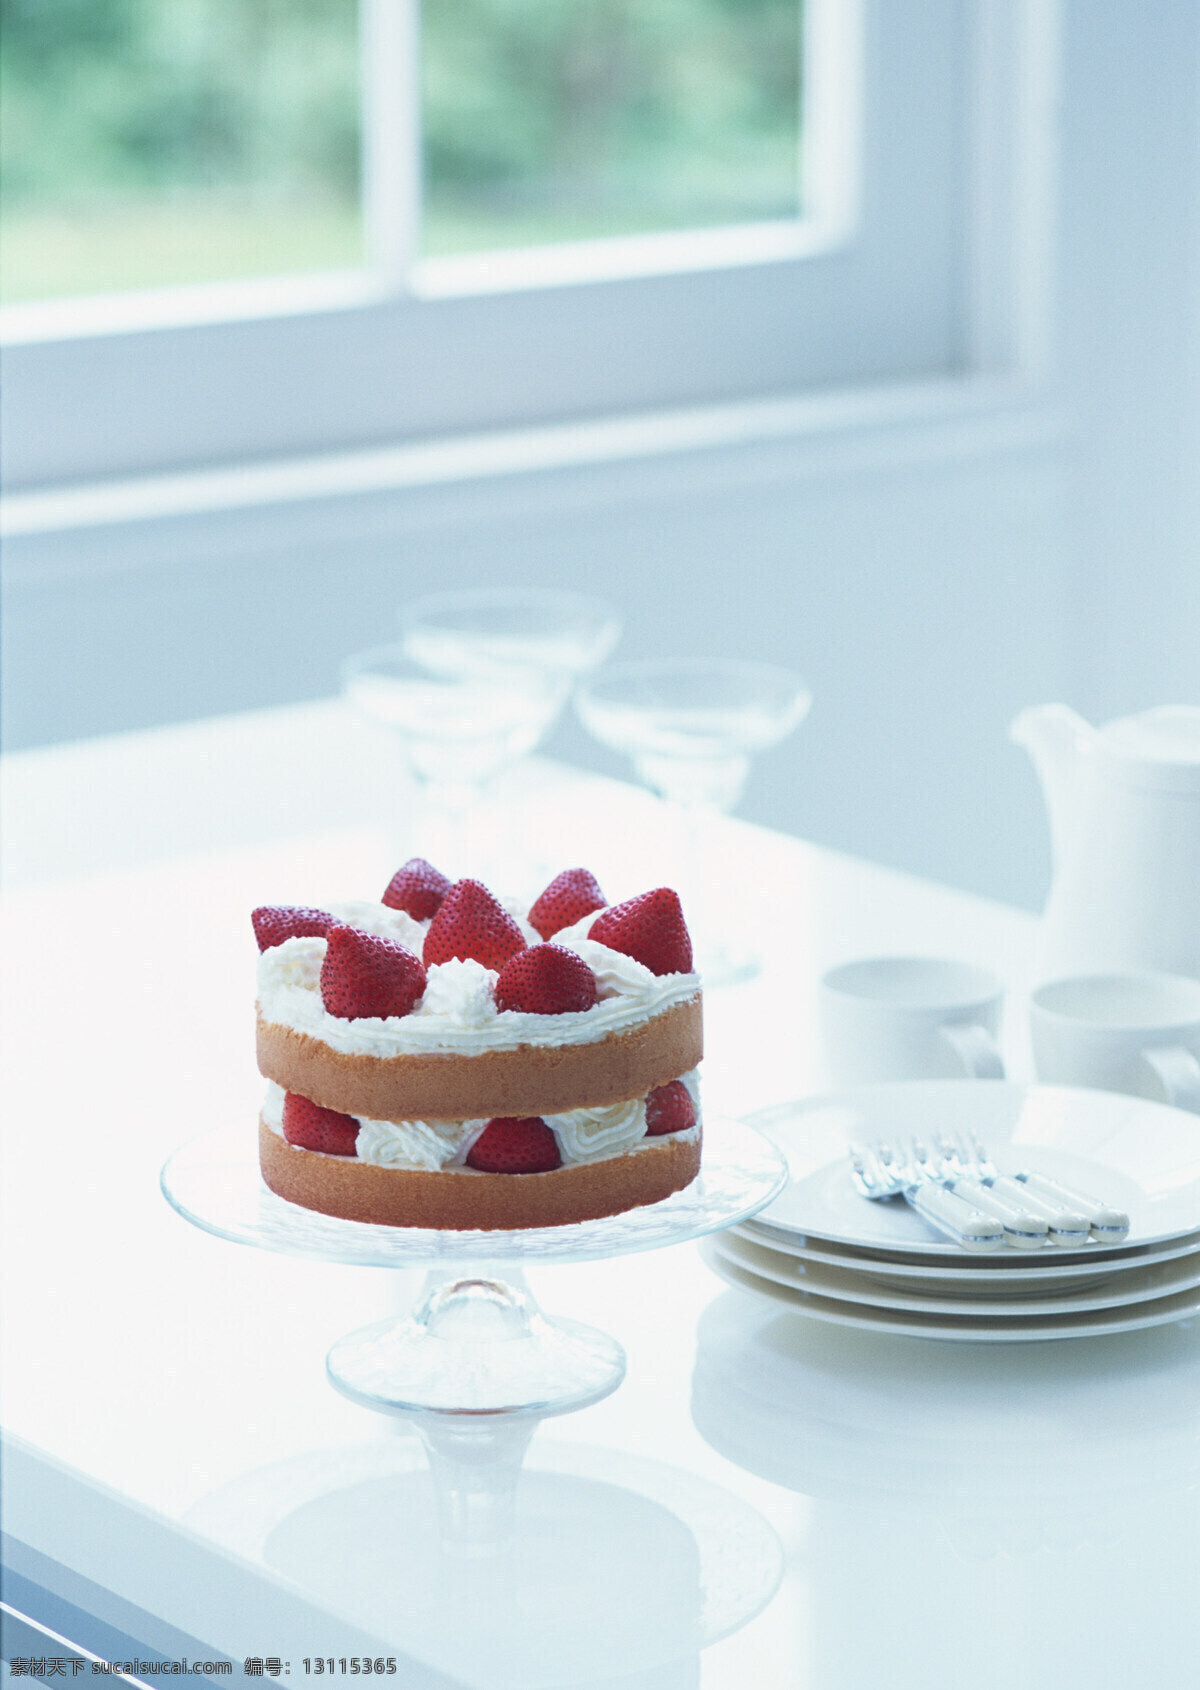 高清图片 蛋糕 慕斯蛋糕 水果蛋糕 草莓 草莓蛋糕 草莓派 手工 烘焙 甜品 甜点 餐饮美食